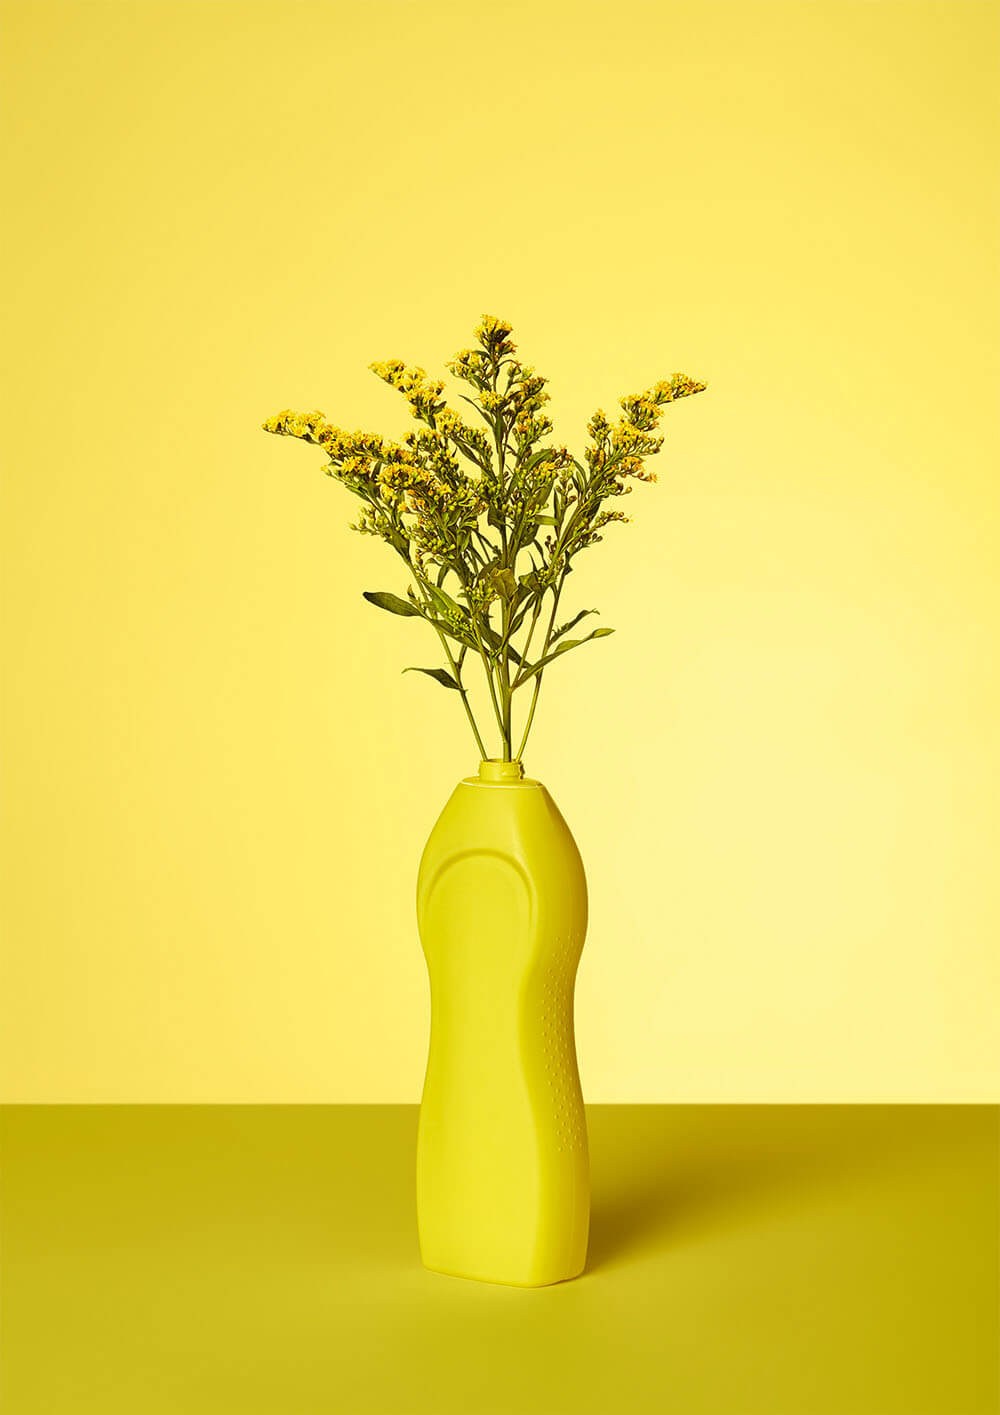 Vanessa Leissring - zdjęcie kwiatów w plastikowej butelce w żółtych odcieniach